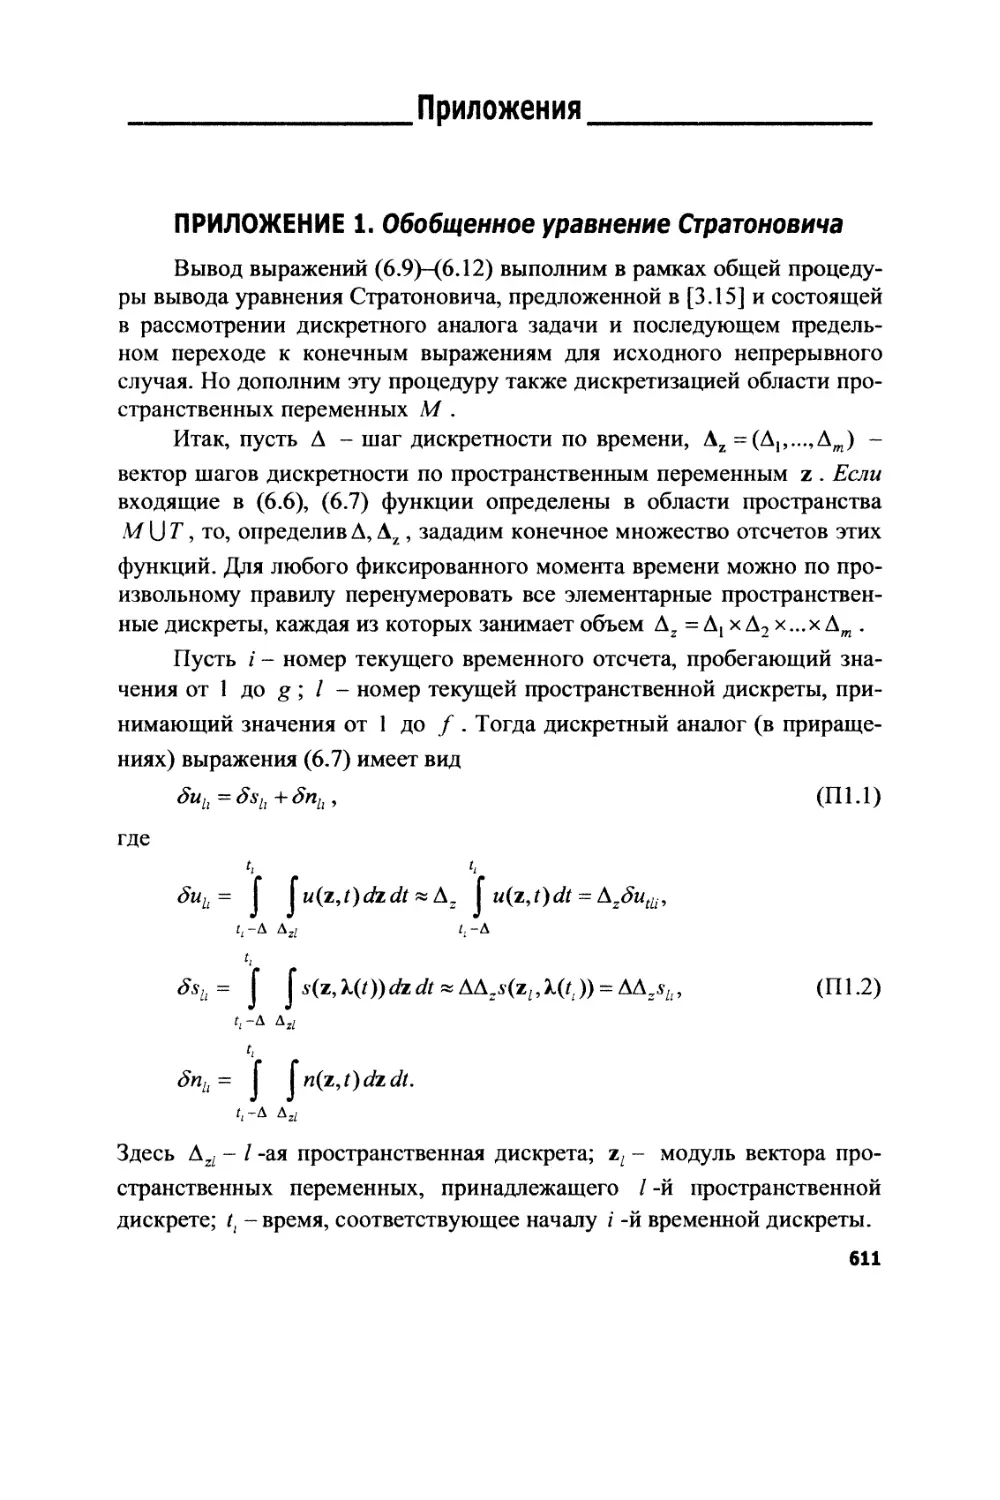 Приложения
1. Обобщенное уравнение Стратоновича